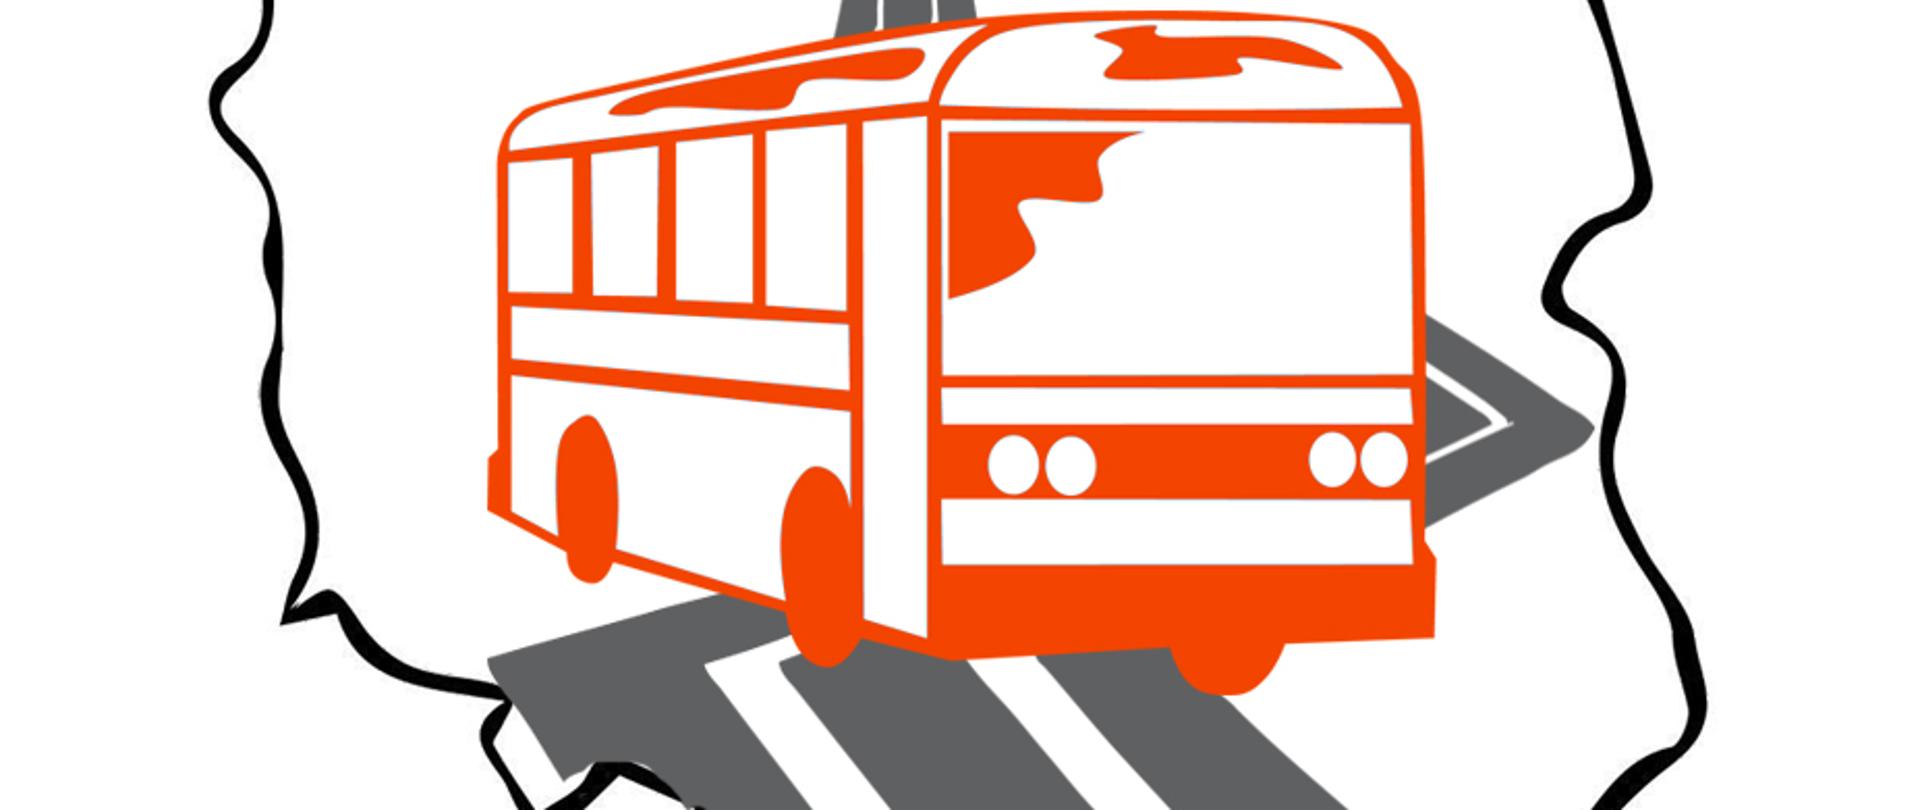 Grafika przedstawiająca kontur Polski. W środku zarys pomarańczowego autobusy, za nim zarys jezdni w kolorze szarym. 